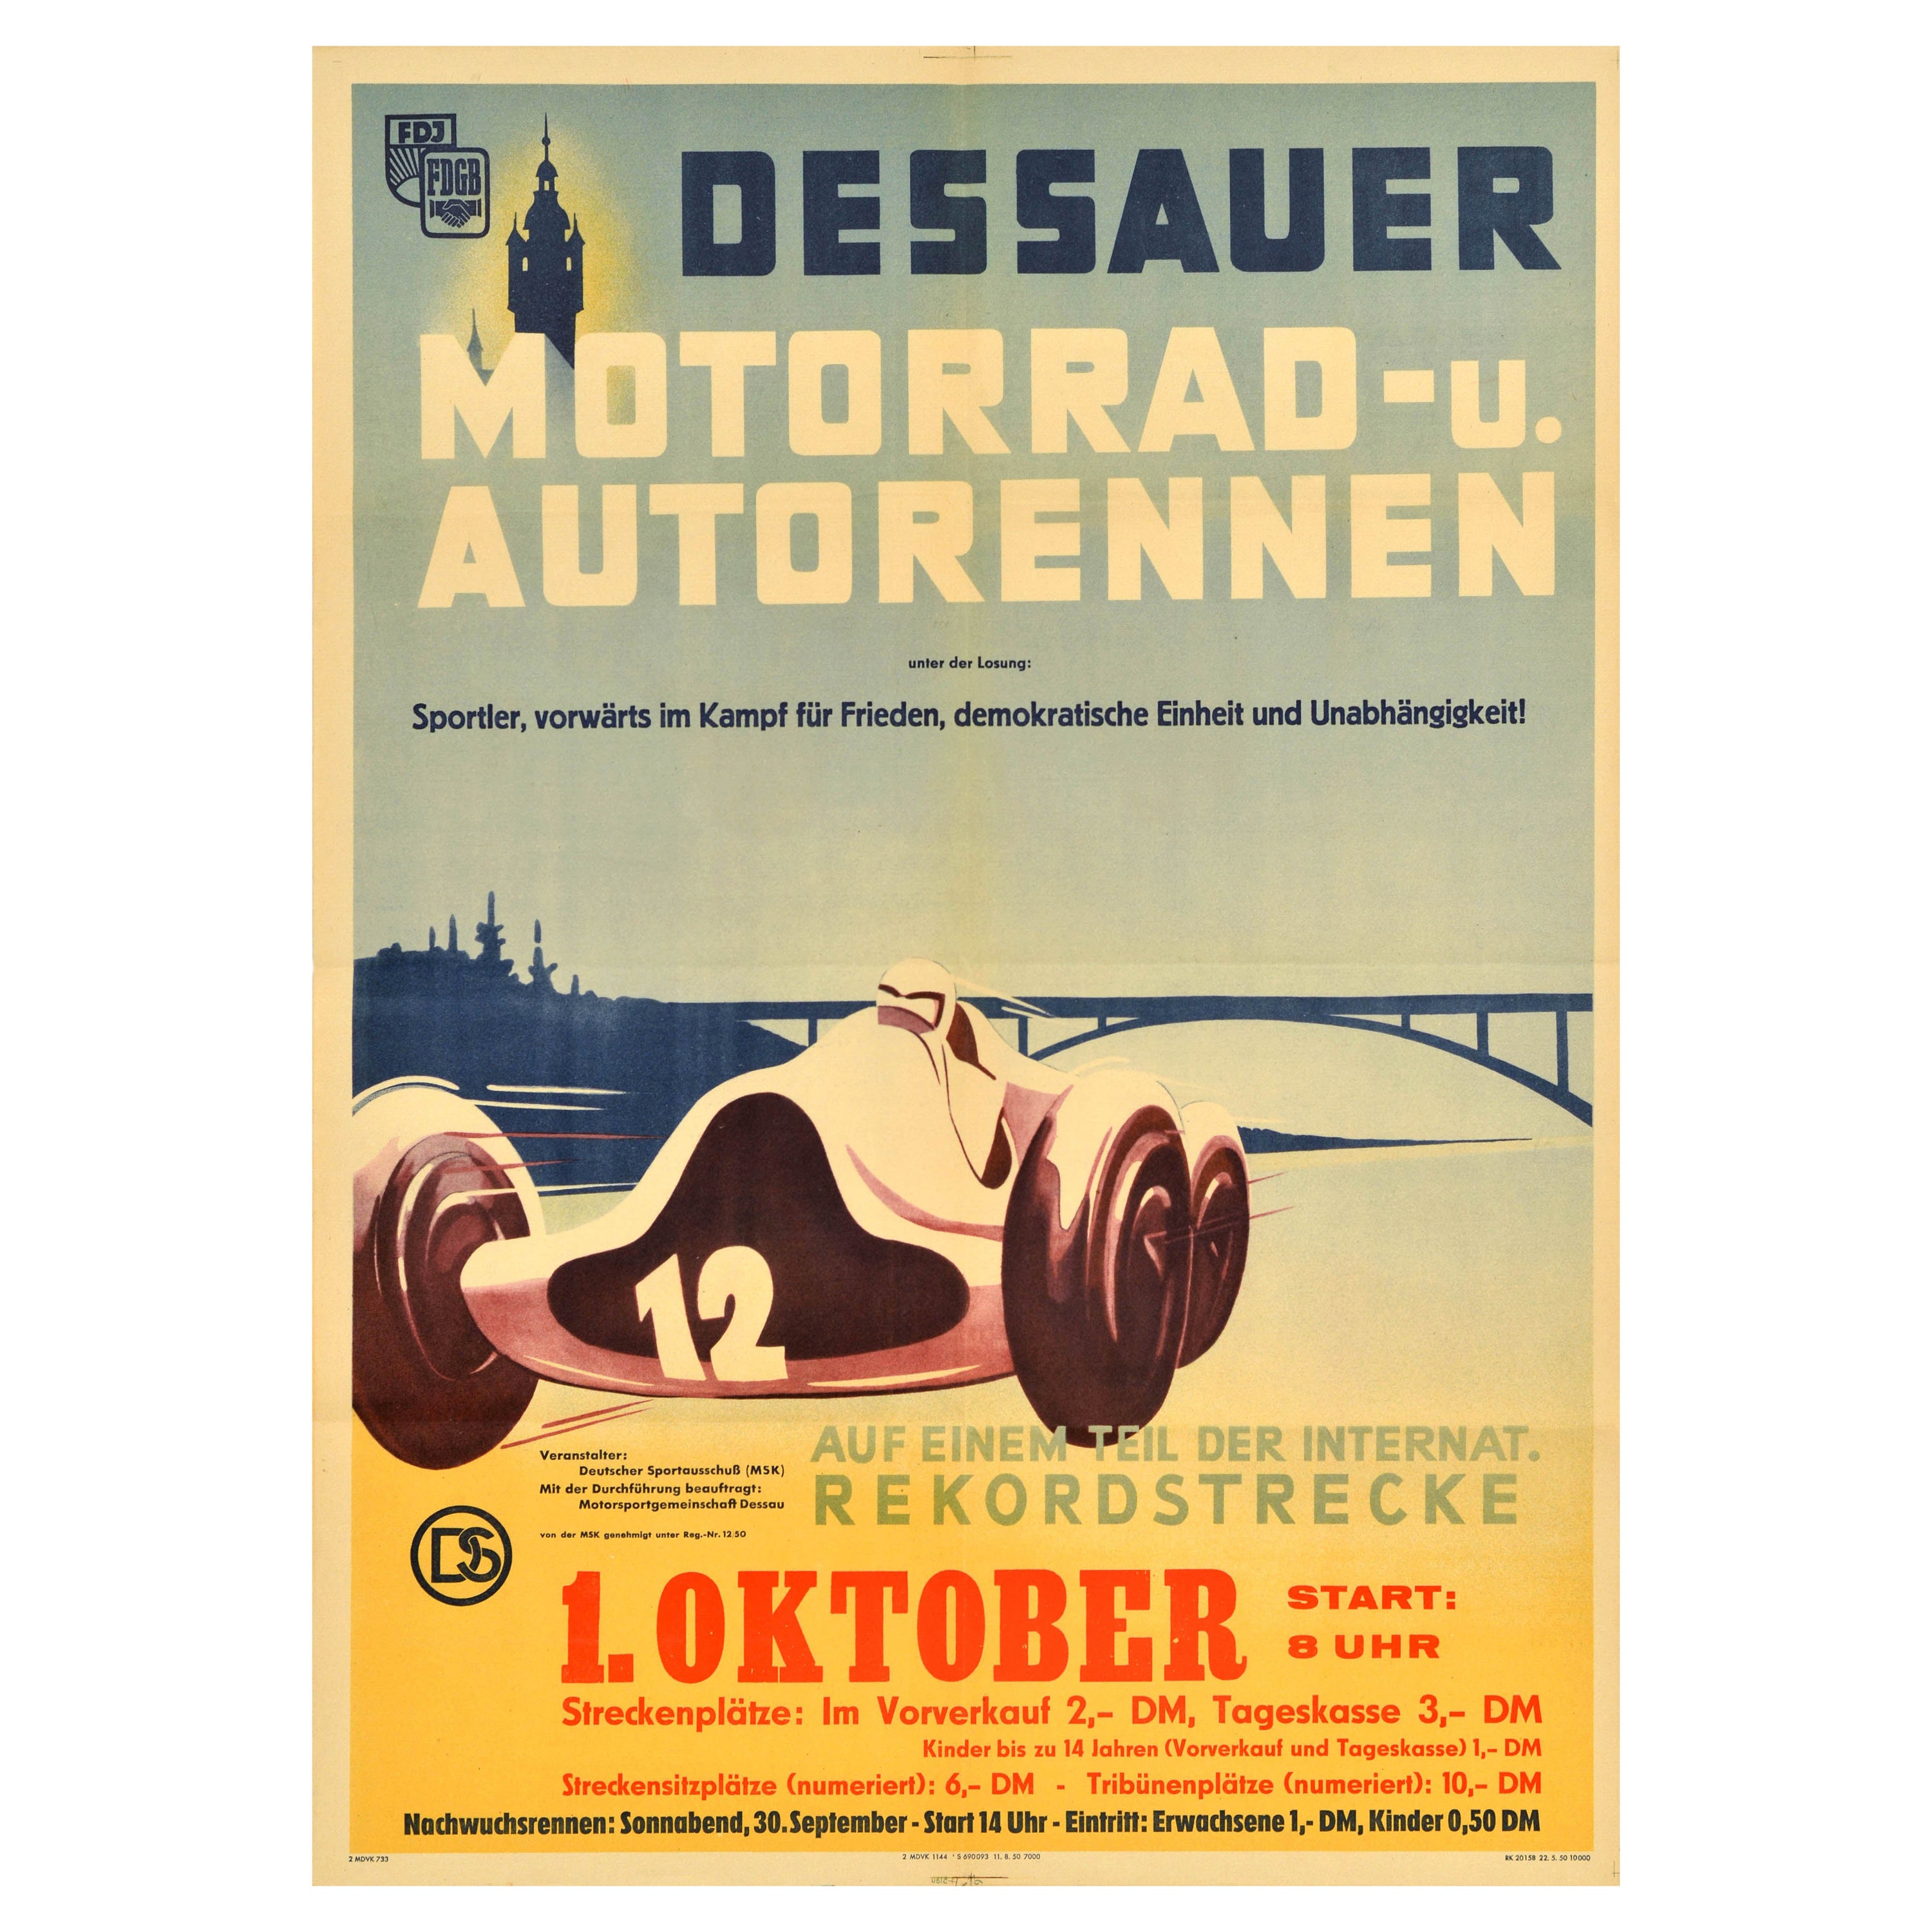 Original Vintage Motorsport Poster Dessau Motorcycle Car Race Germany Midcentury For Sale